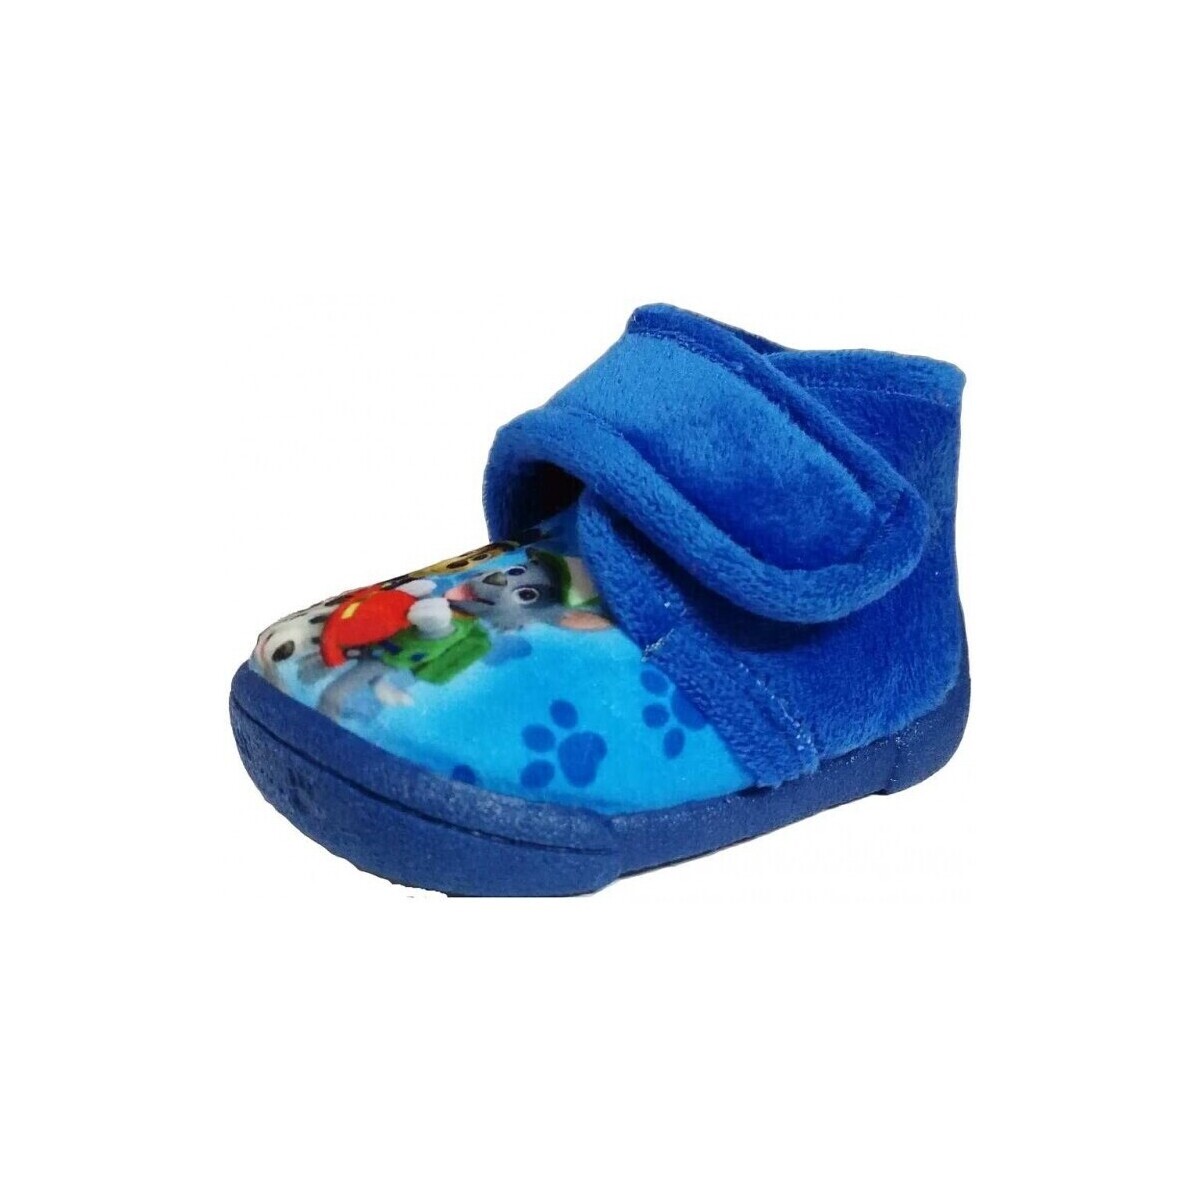 Topánky Deti Papuče Colores 20202-18 Námornícka modrá